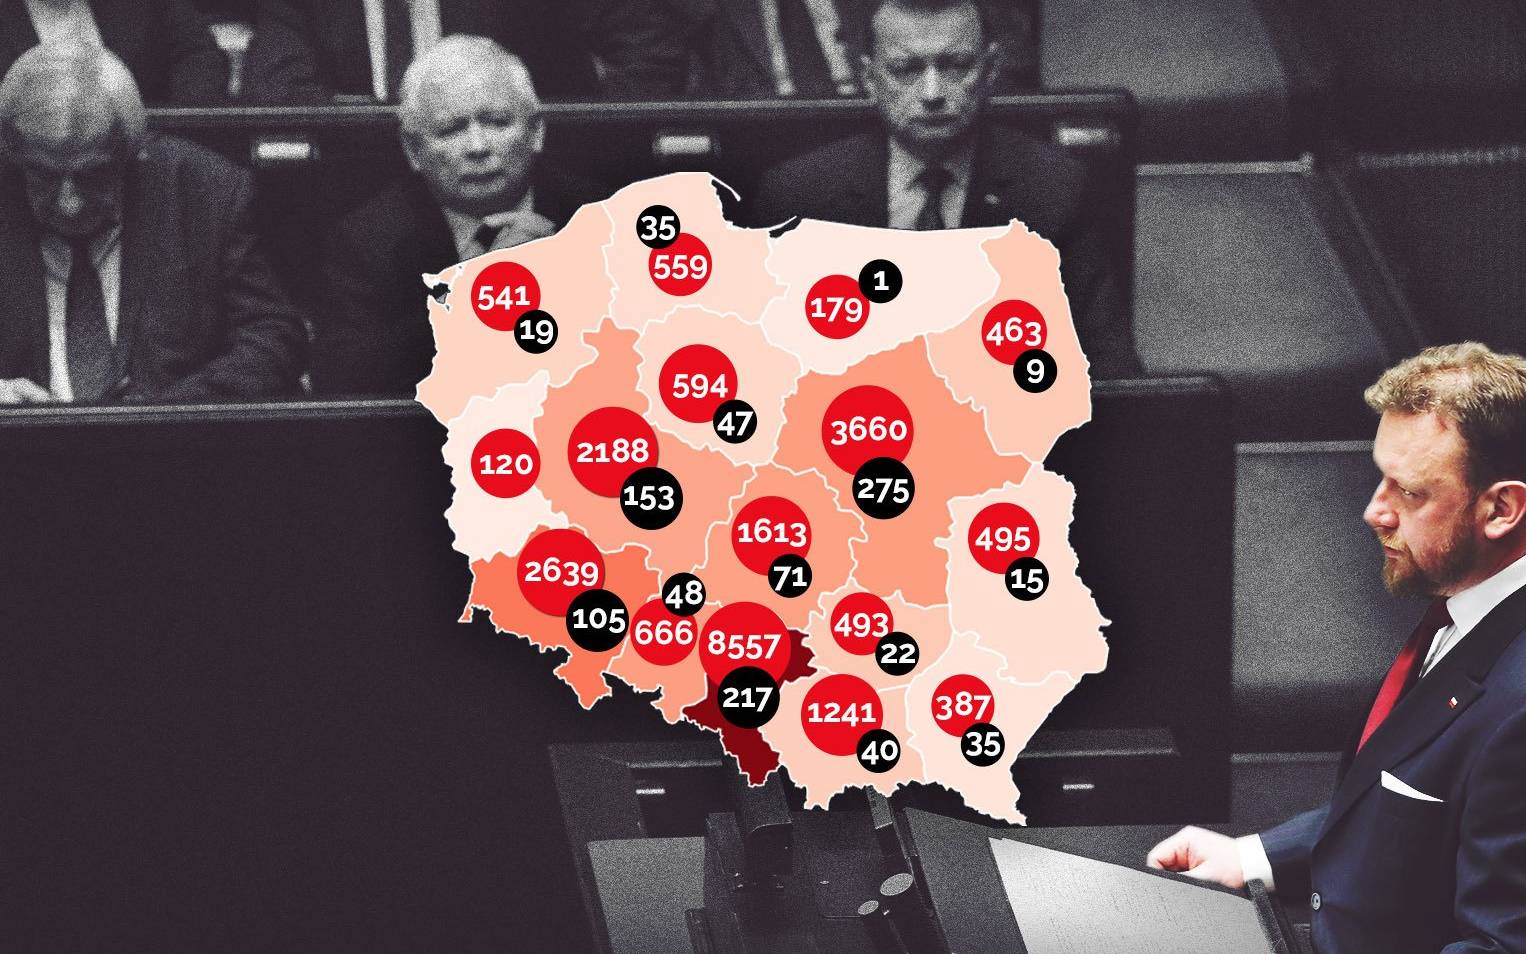 Grafika do artykułu Więcej wyzdrowiałych niż zakażonych – w Polsce, a może i na świecie [WYKRESY, FAKTY]